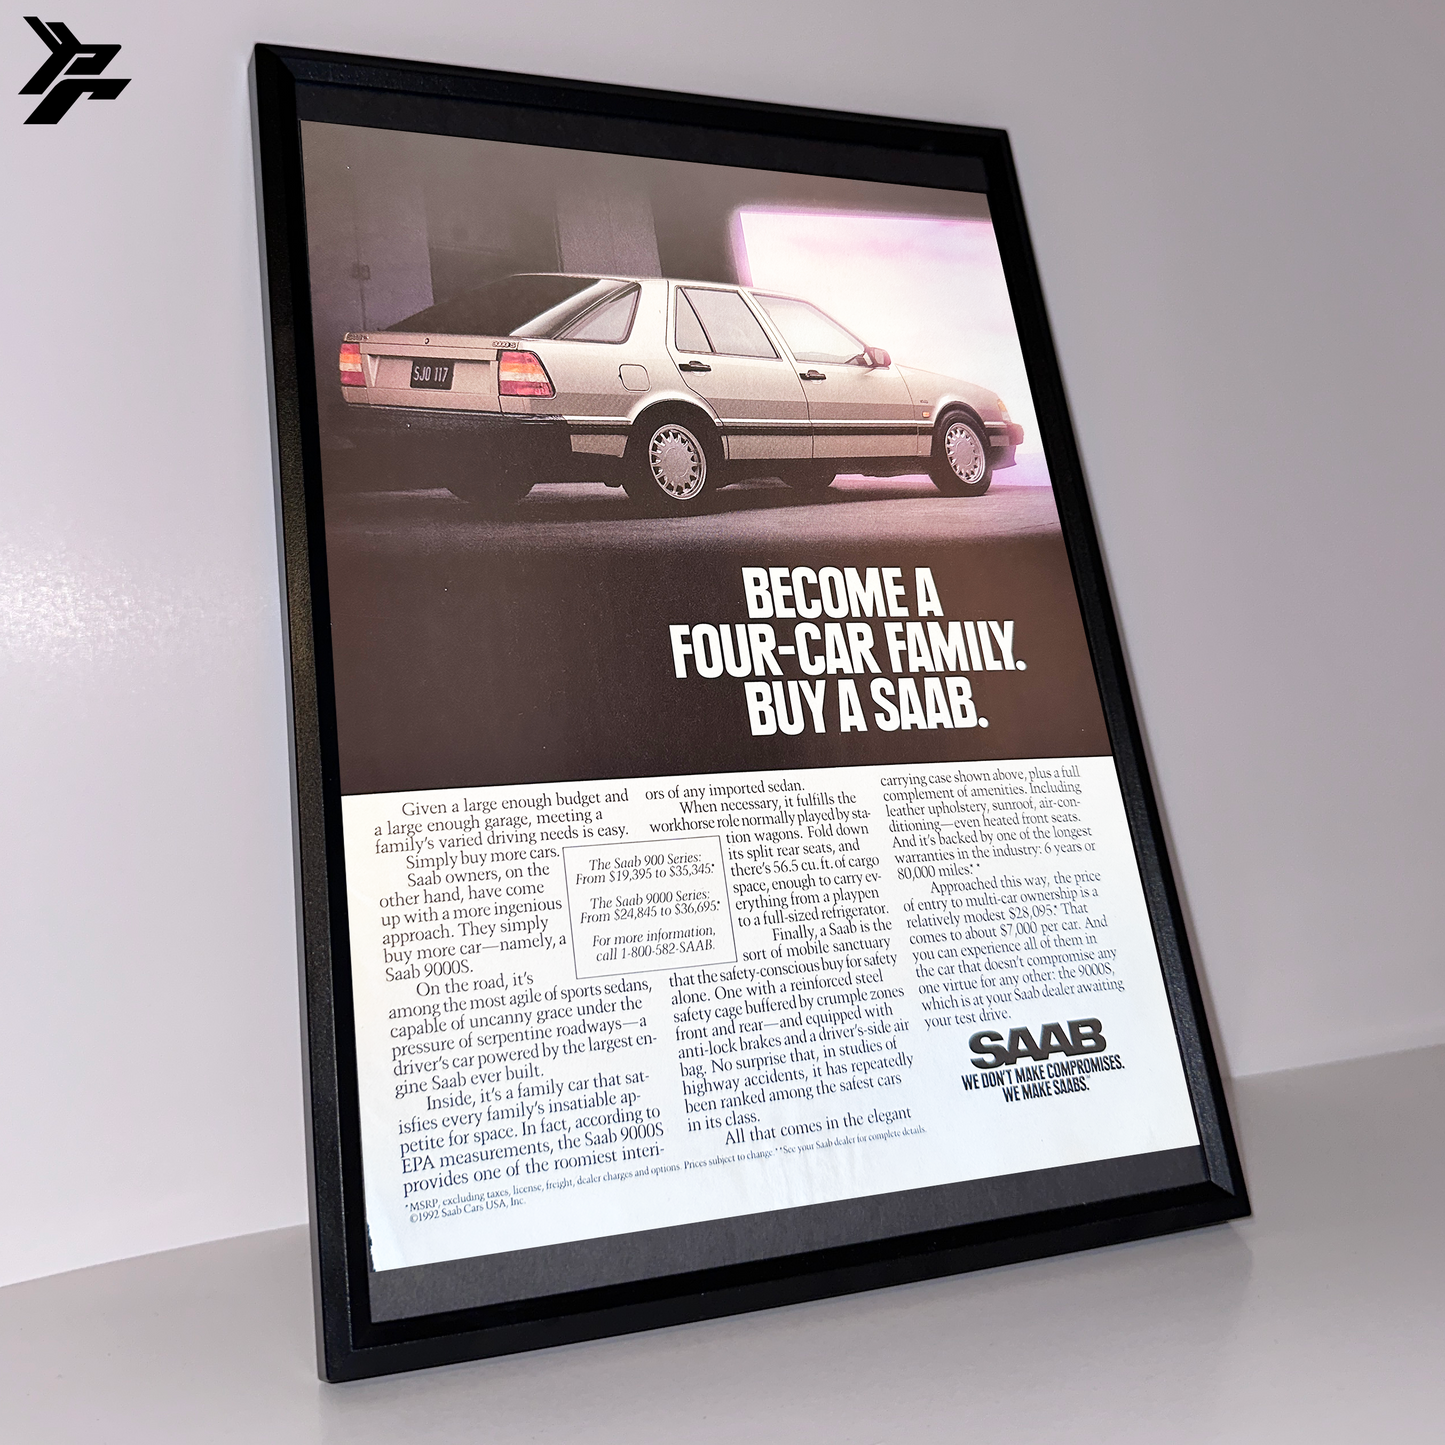 Saab Become a four car family framed ad